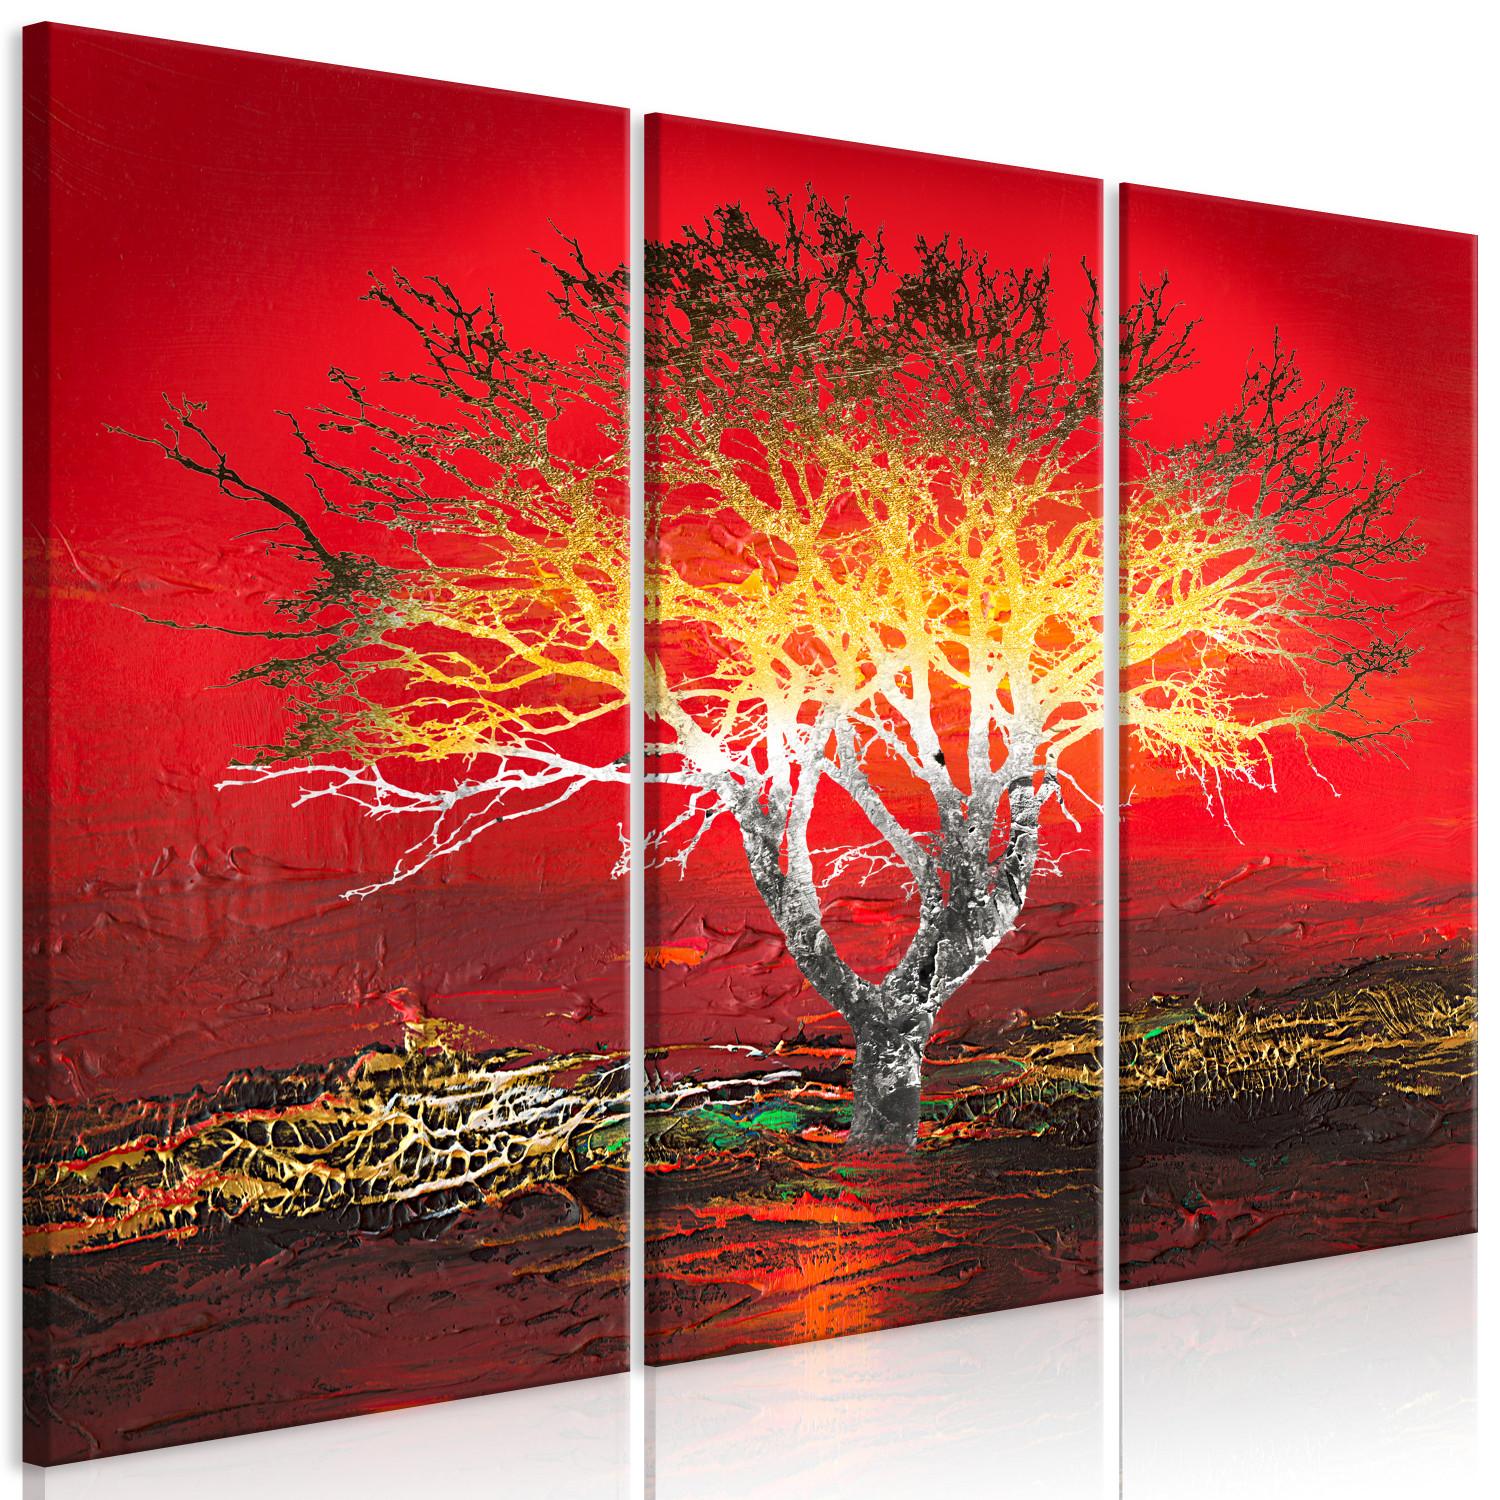 Cuadro Paisaje alienígena - árbol inquietante sobre un fondo rojo abstracto